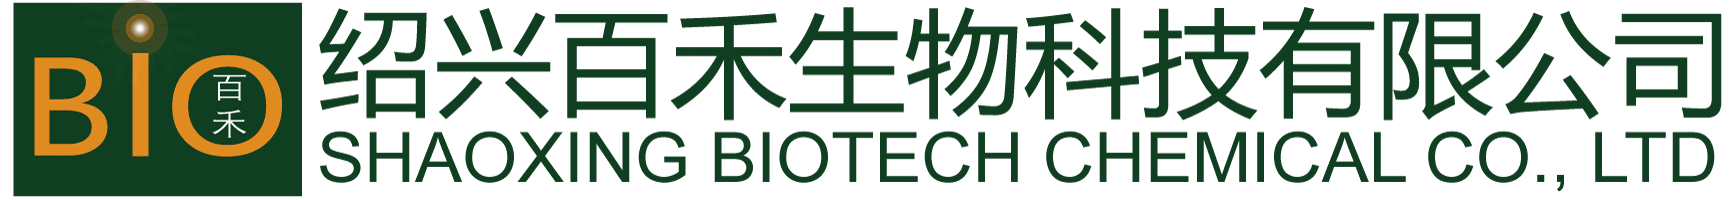 Shaoxing Biotech Chemical Co Ltd, 绍兴百禾生物科技有限公司